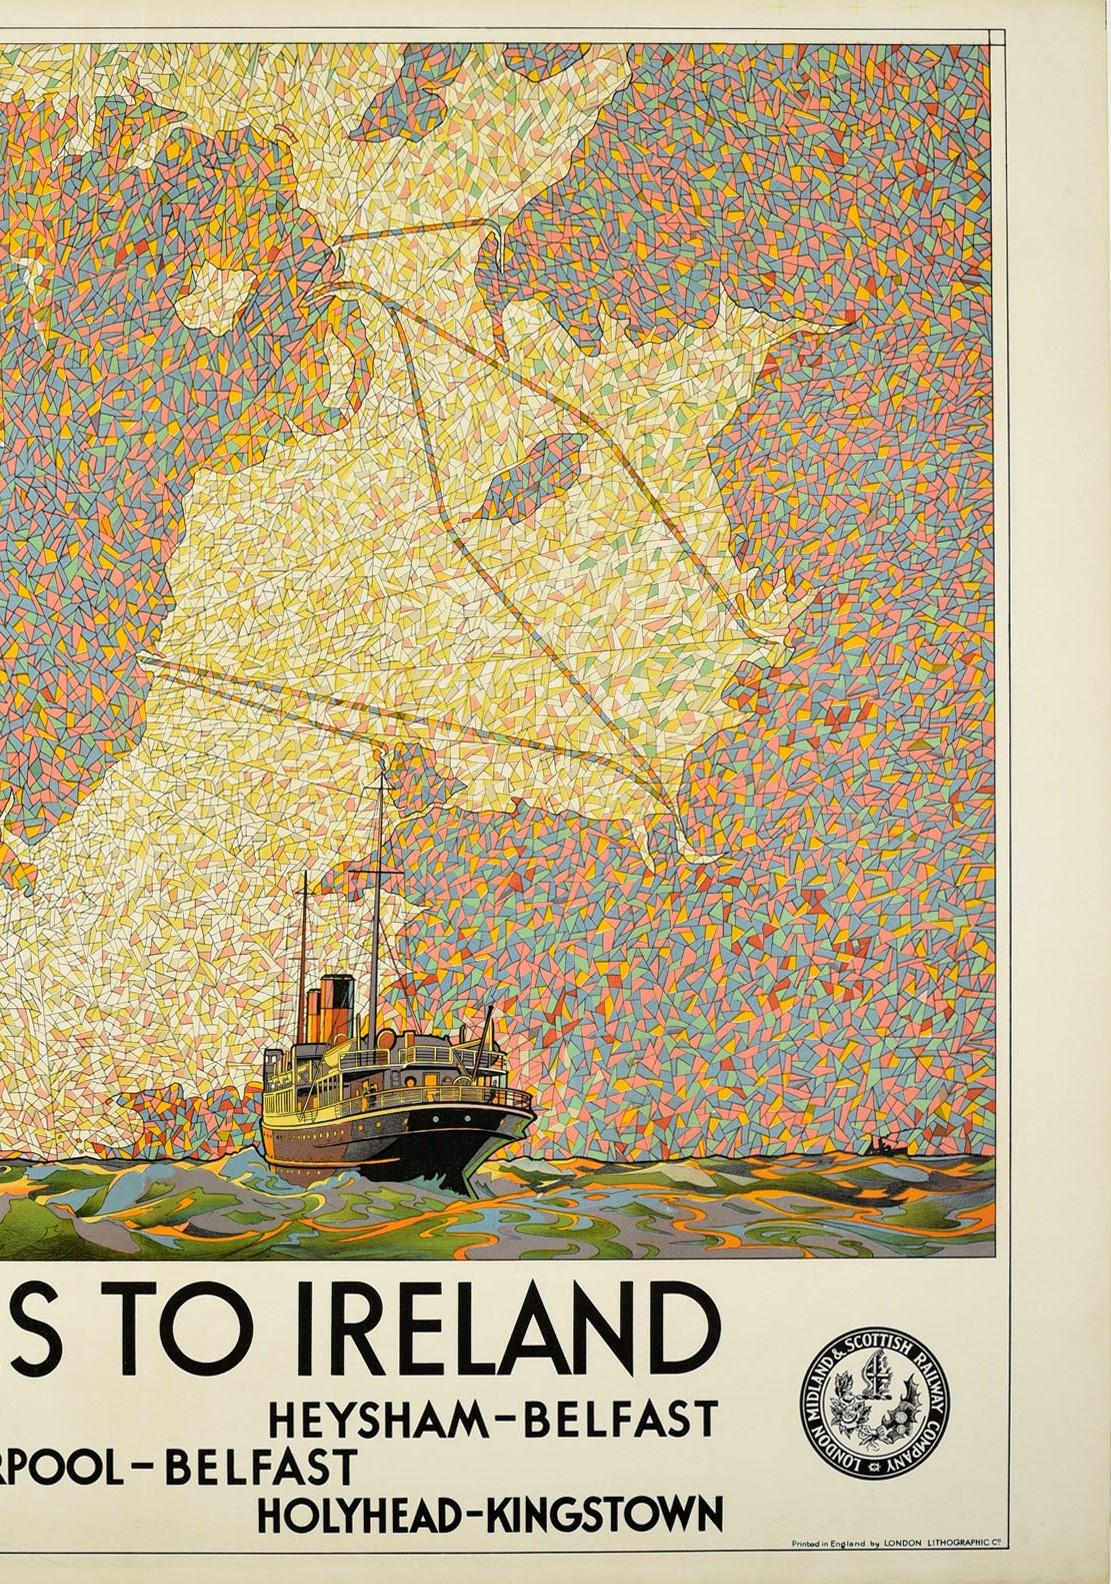 Seltenes Original-Reiseplakat der LMS - 5 Routes to Ireland - herausgegeben von der London Midland & Scottish Railway mit dem fantastischen Motiv eines Schiffes, das über die kabbelige Irische See segelt, mit kleineren Segelbooten in der Nähe der